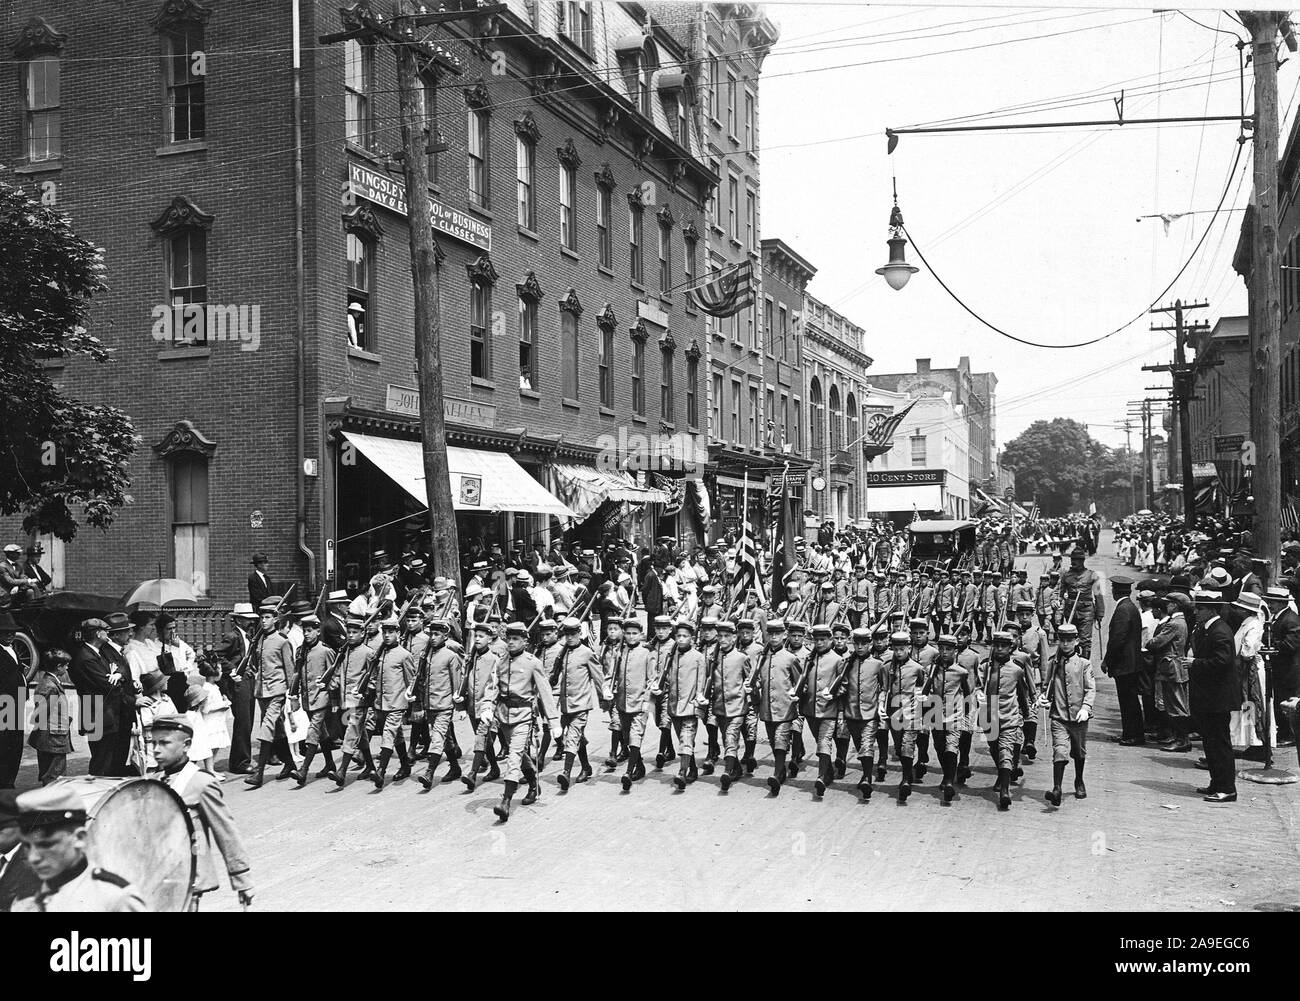 Zeremonien - Tag der Unabhängigkeit, 1917 - Jungen von St. Agnes Kloster Sparkill, N.Y. in Parade, 4. Juli 1917, Nyack, N.Y Stockfoto